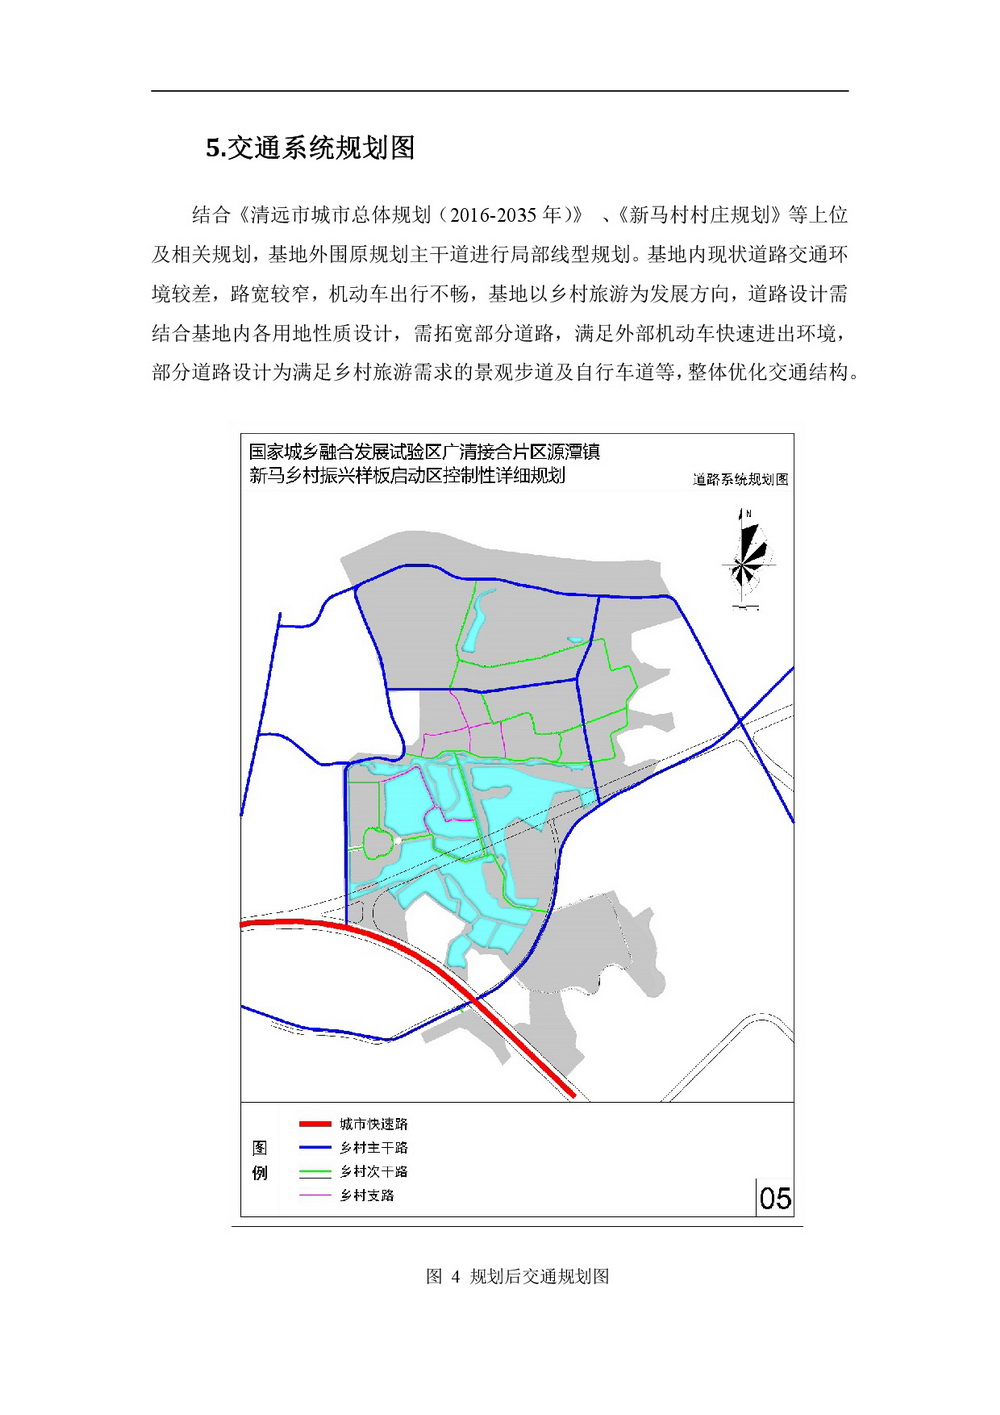 20220425 清远市国家城乡融合发展广清片区 公示材料-007.jpg